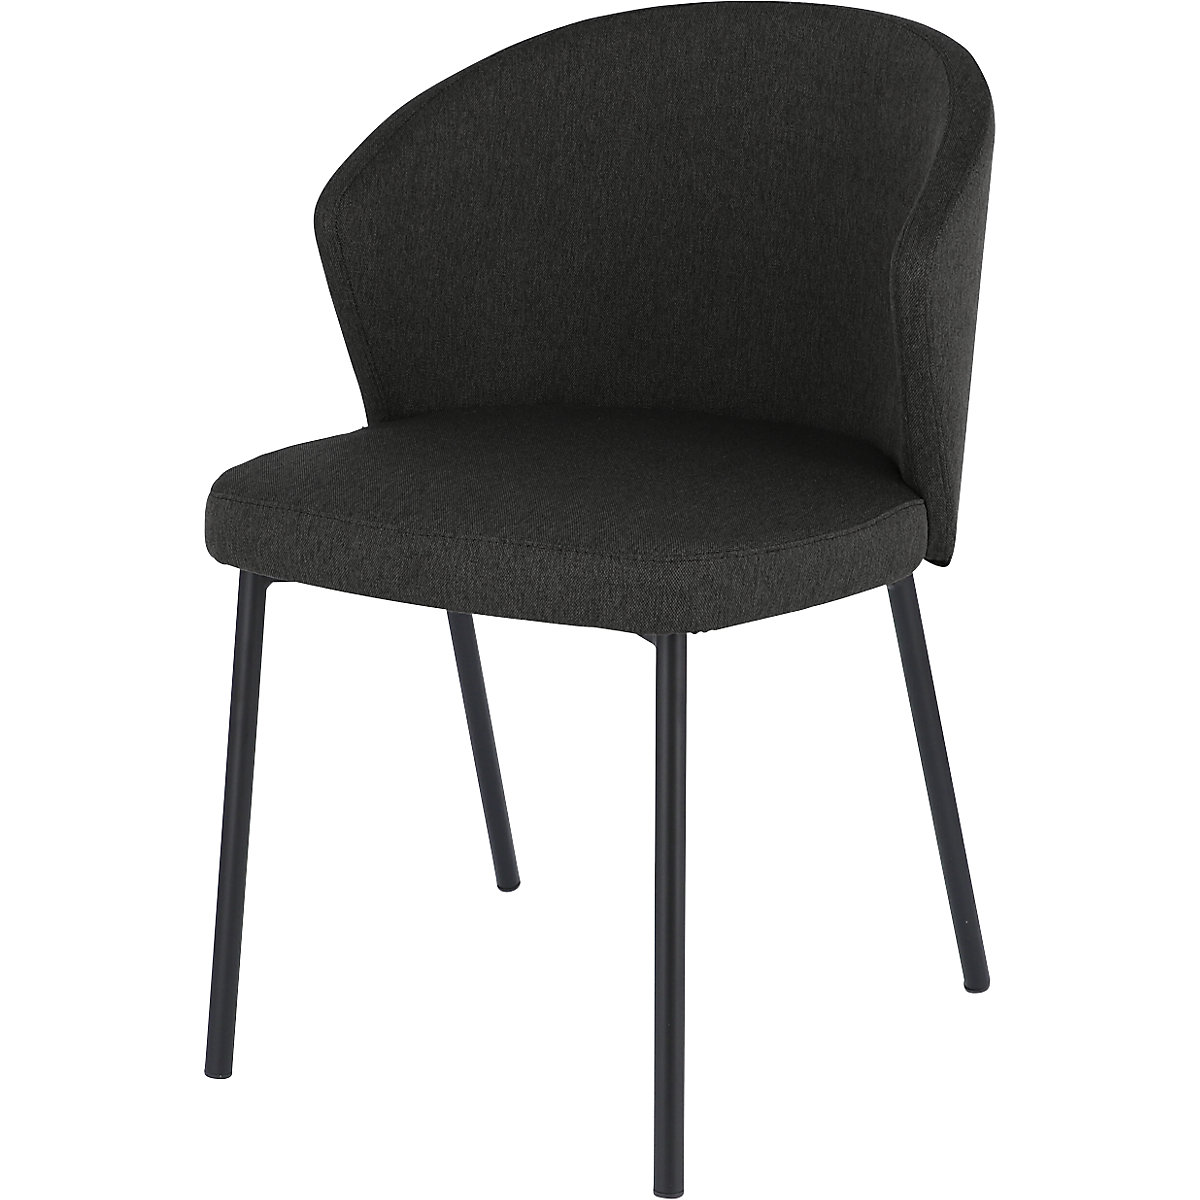 Multifunctionele stoel MILA, frame van staalbuis zwart, zwart-10